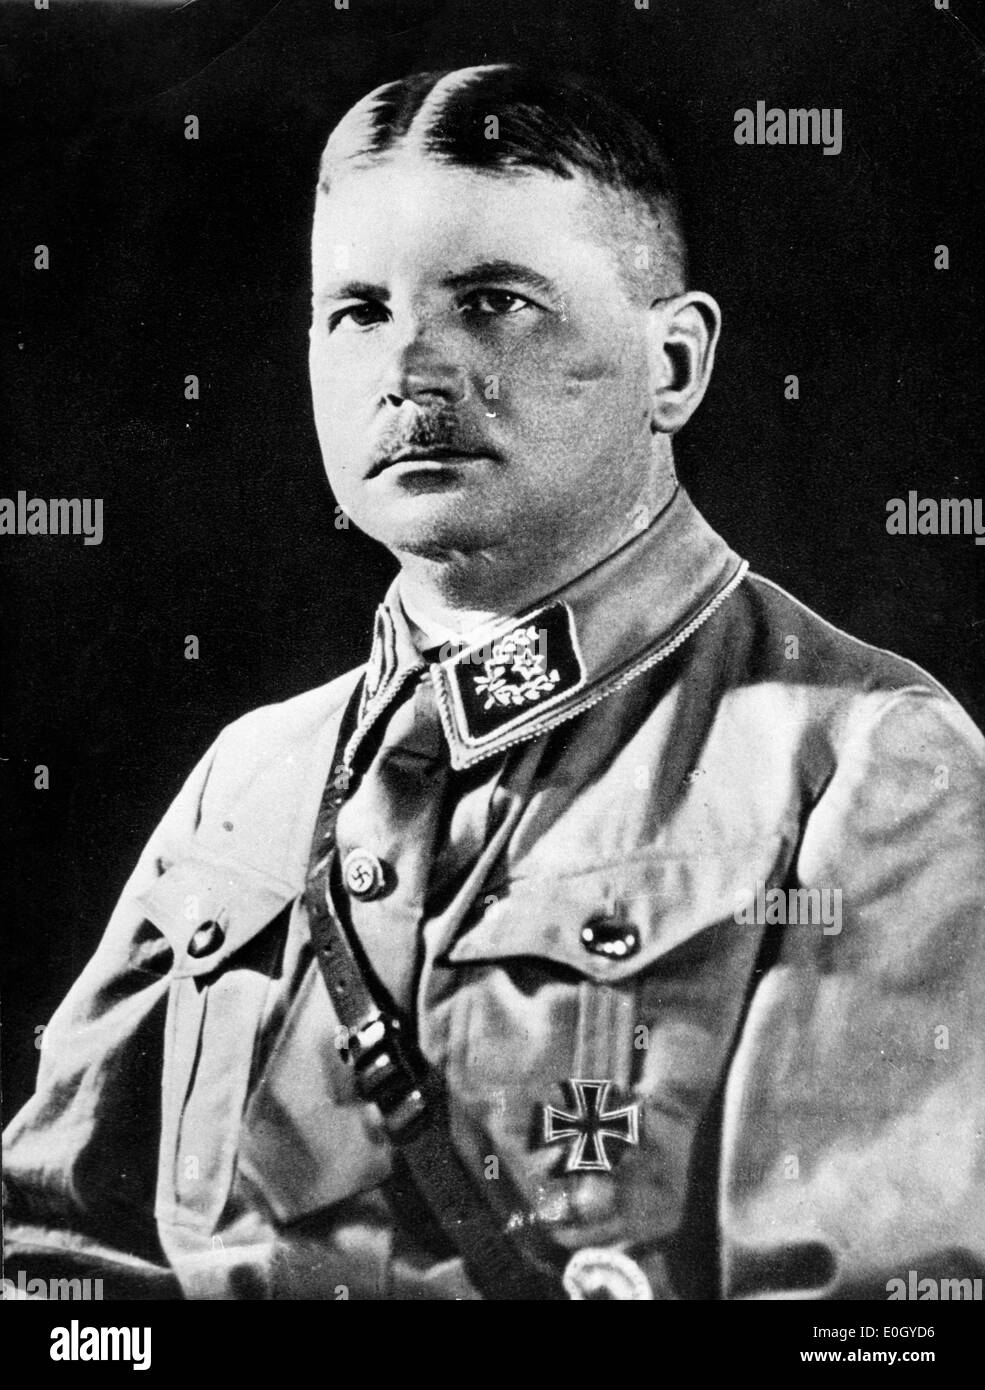 Enero 01, 1940 - Alemania - Foto de archivo: circa 1940, ubicación exacta desconocida. Retrato del líder nazi ERNST ROEHM. Foto de stock